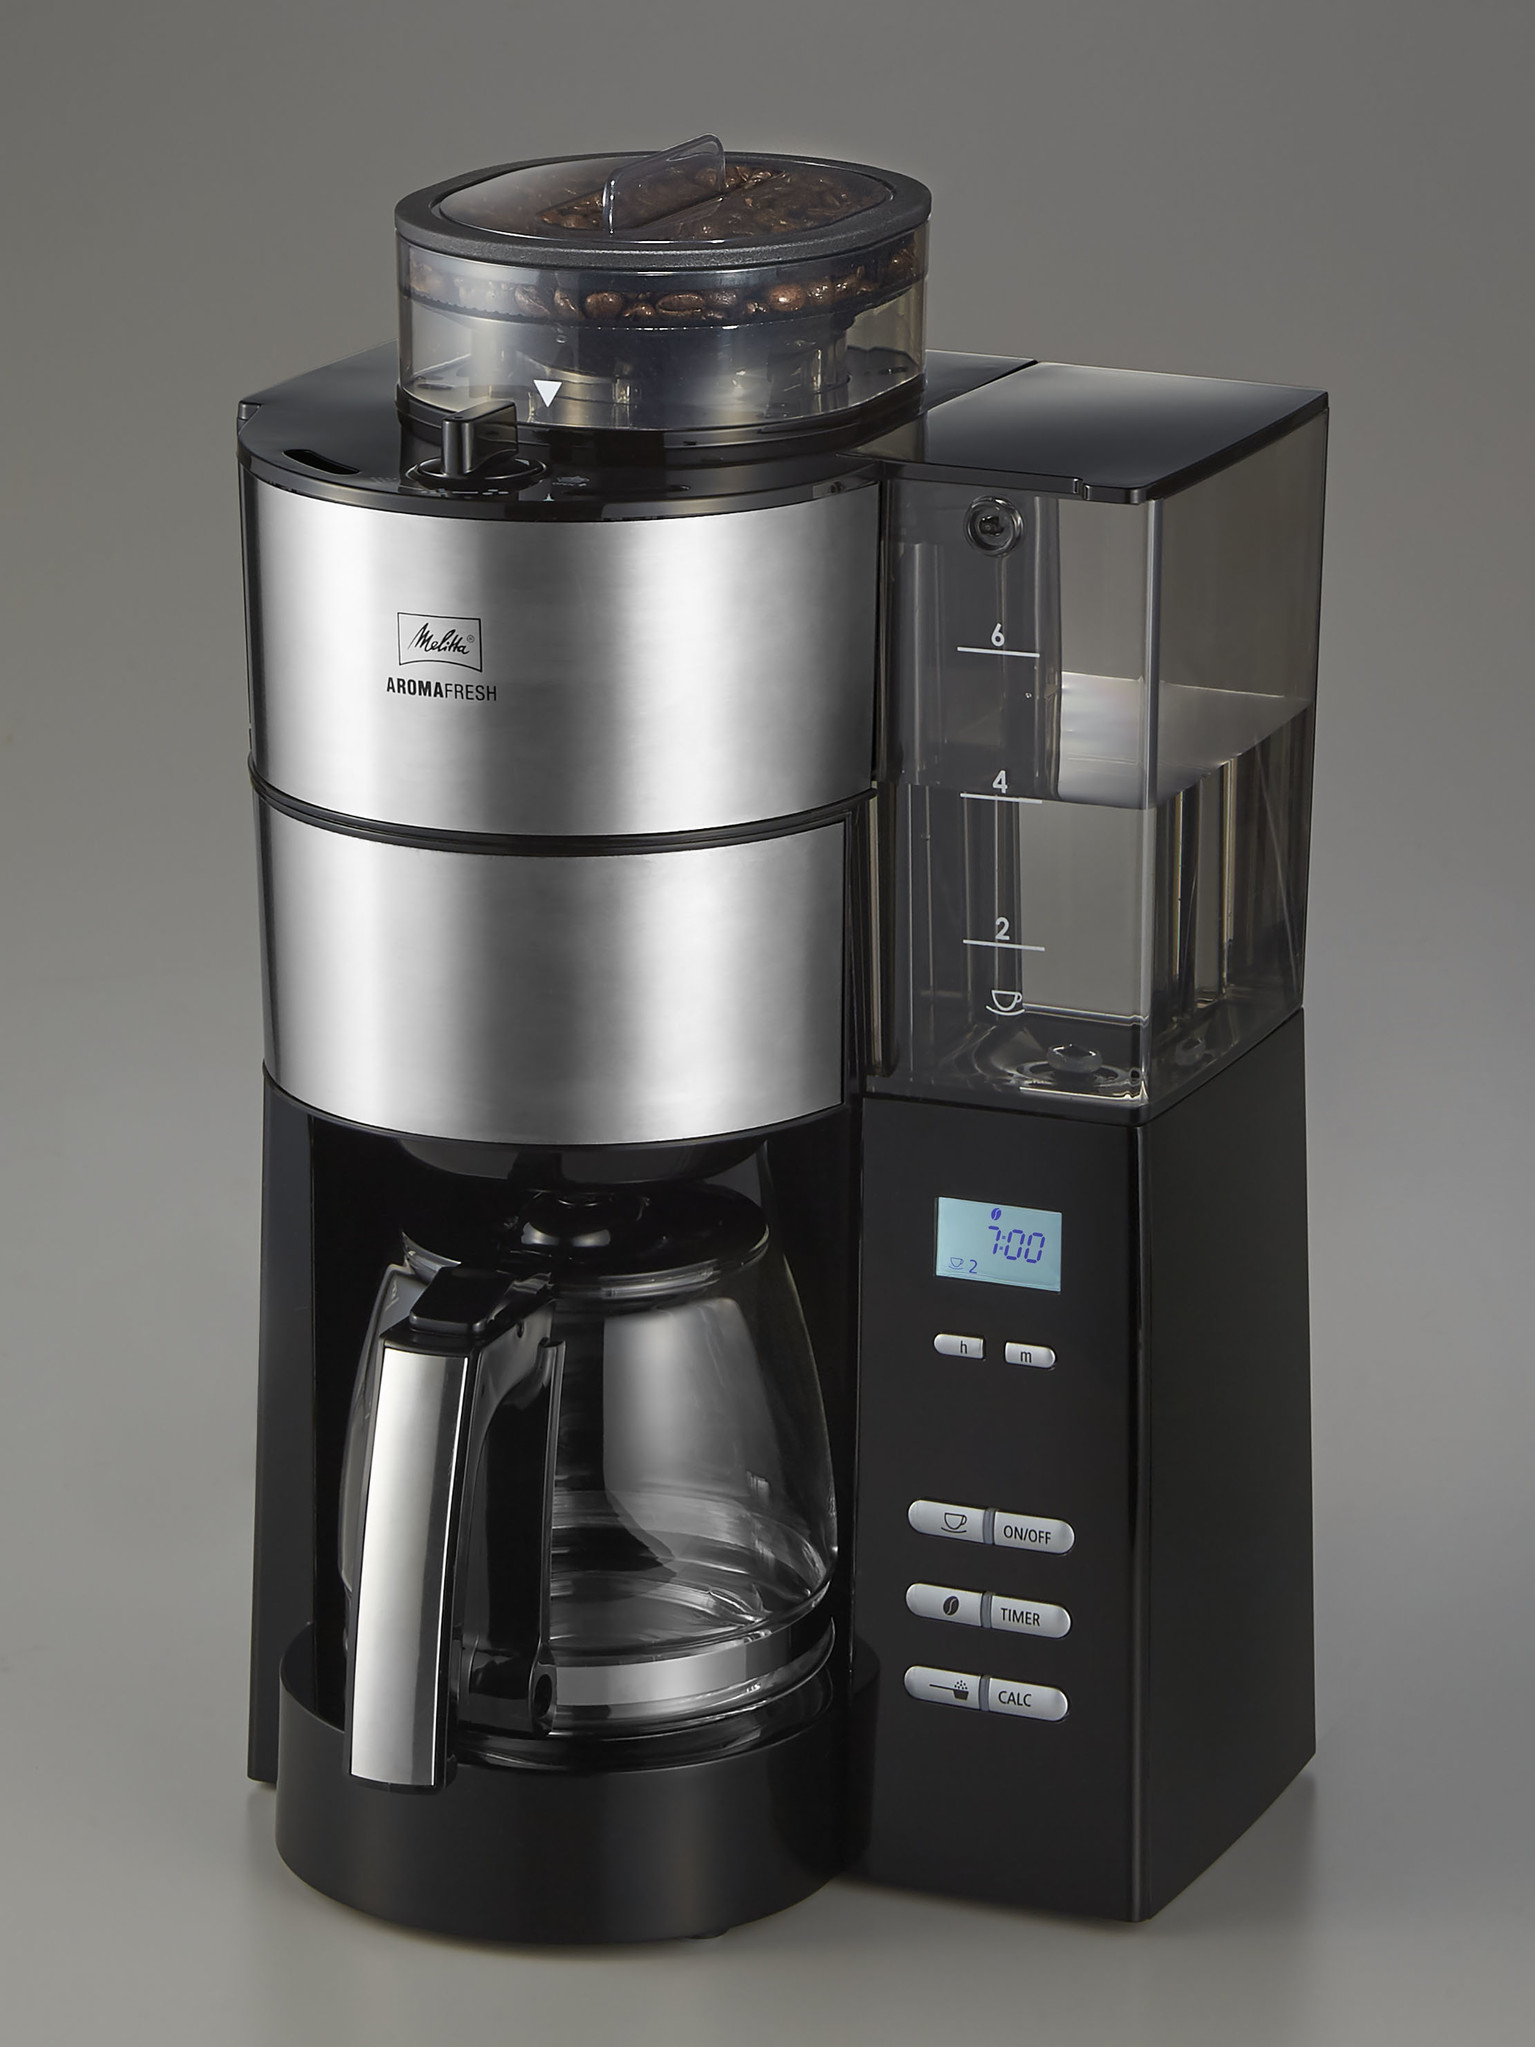 最新デザインの メリタ ミル付き全自動コーヒーメーカー アロマフレッシュサーモ 2~10杯用 ブラック AFT1021-1B 